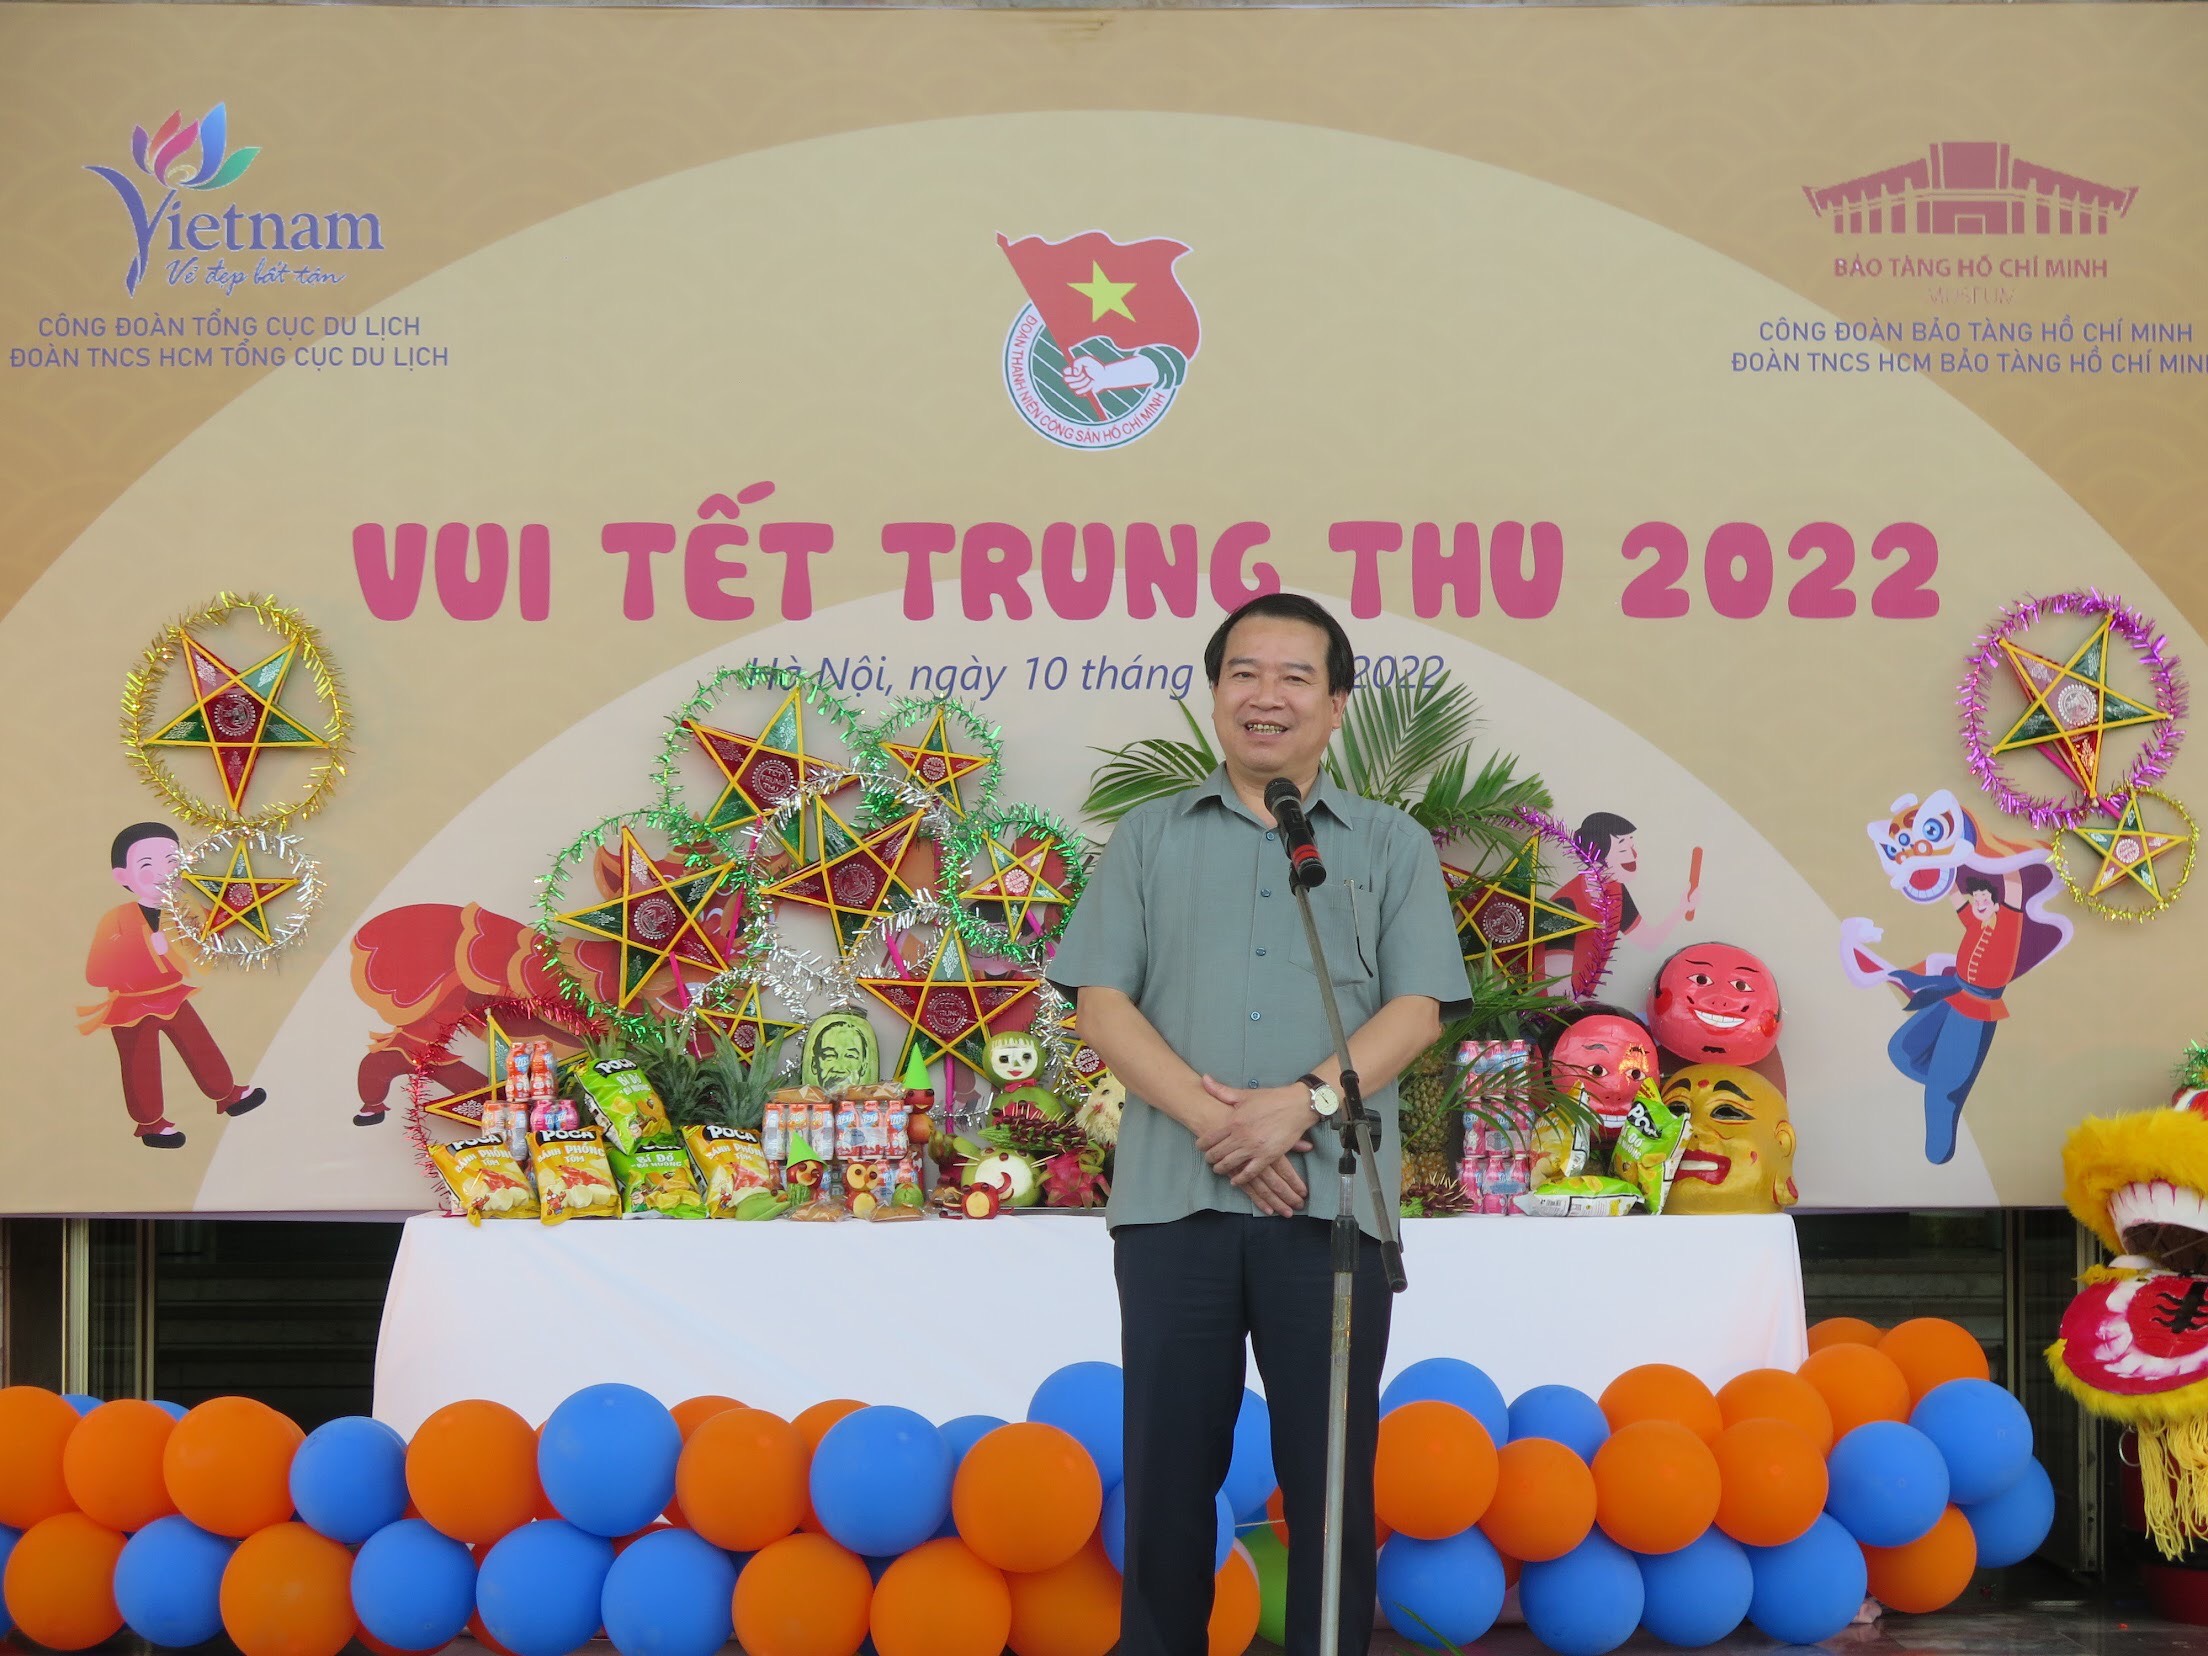 Phó Tổng cục trưởng TCDL Hà Văn Siêu chia sẻ